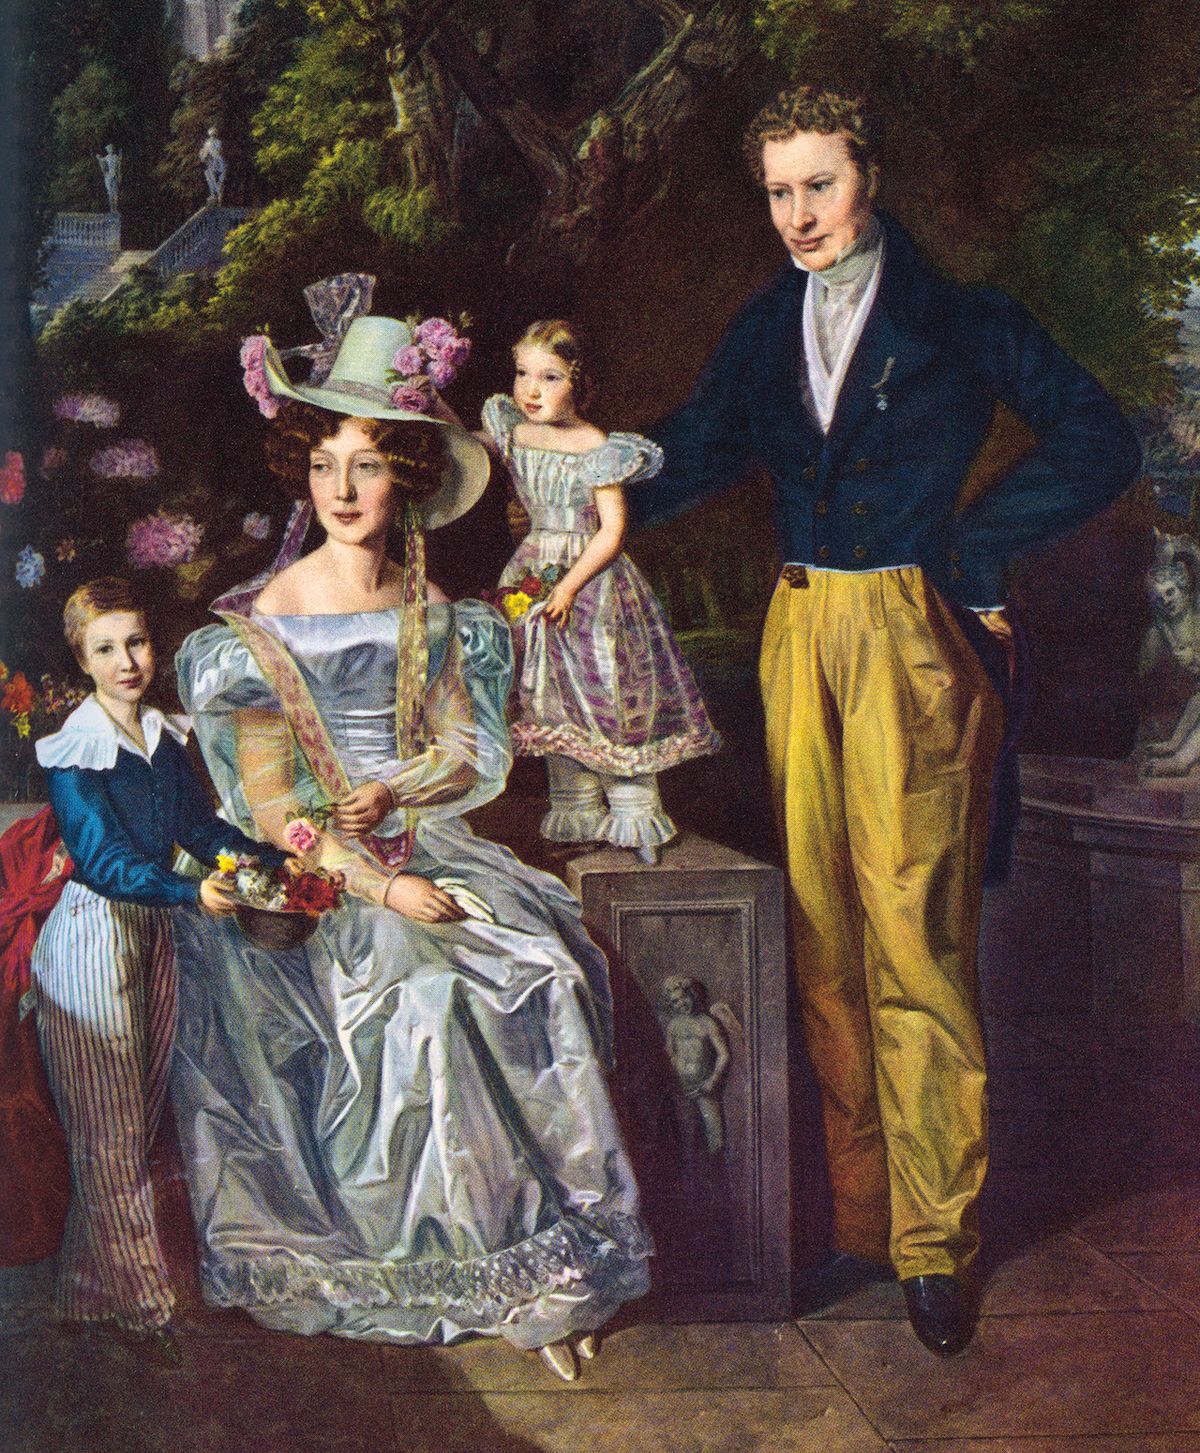 Hlavně se dobře vdát, pak mohl být život v 19. století idylický – jako na obrazu Rodina v parku od Ferdinanda Georga Waldmüllera.